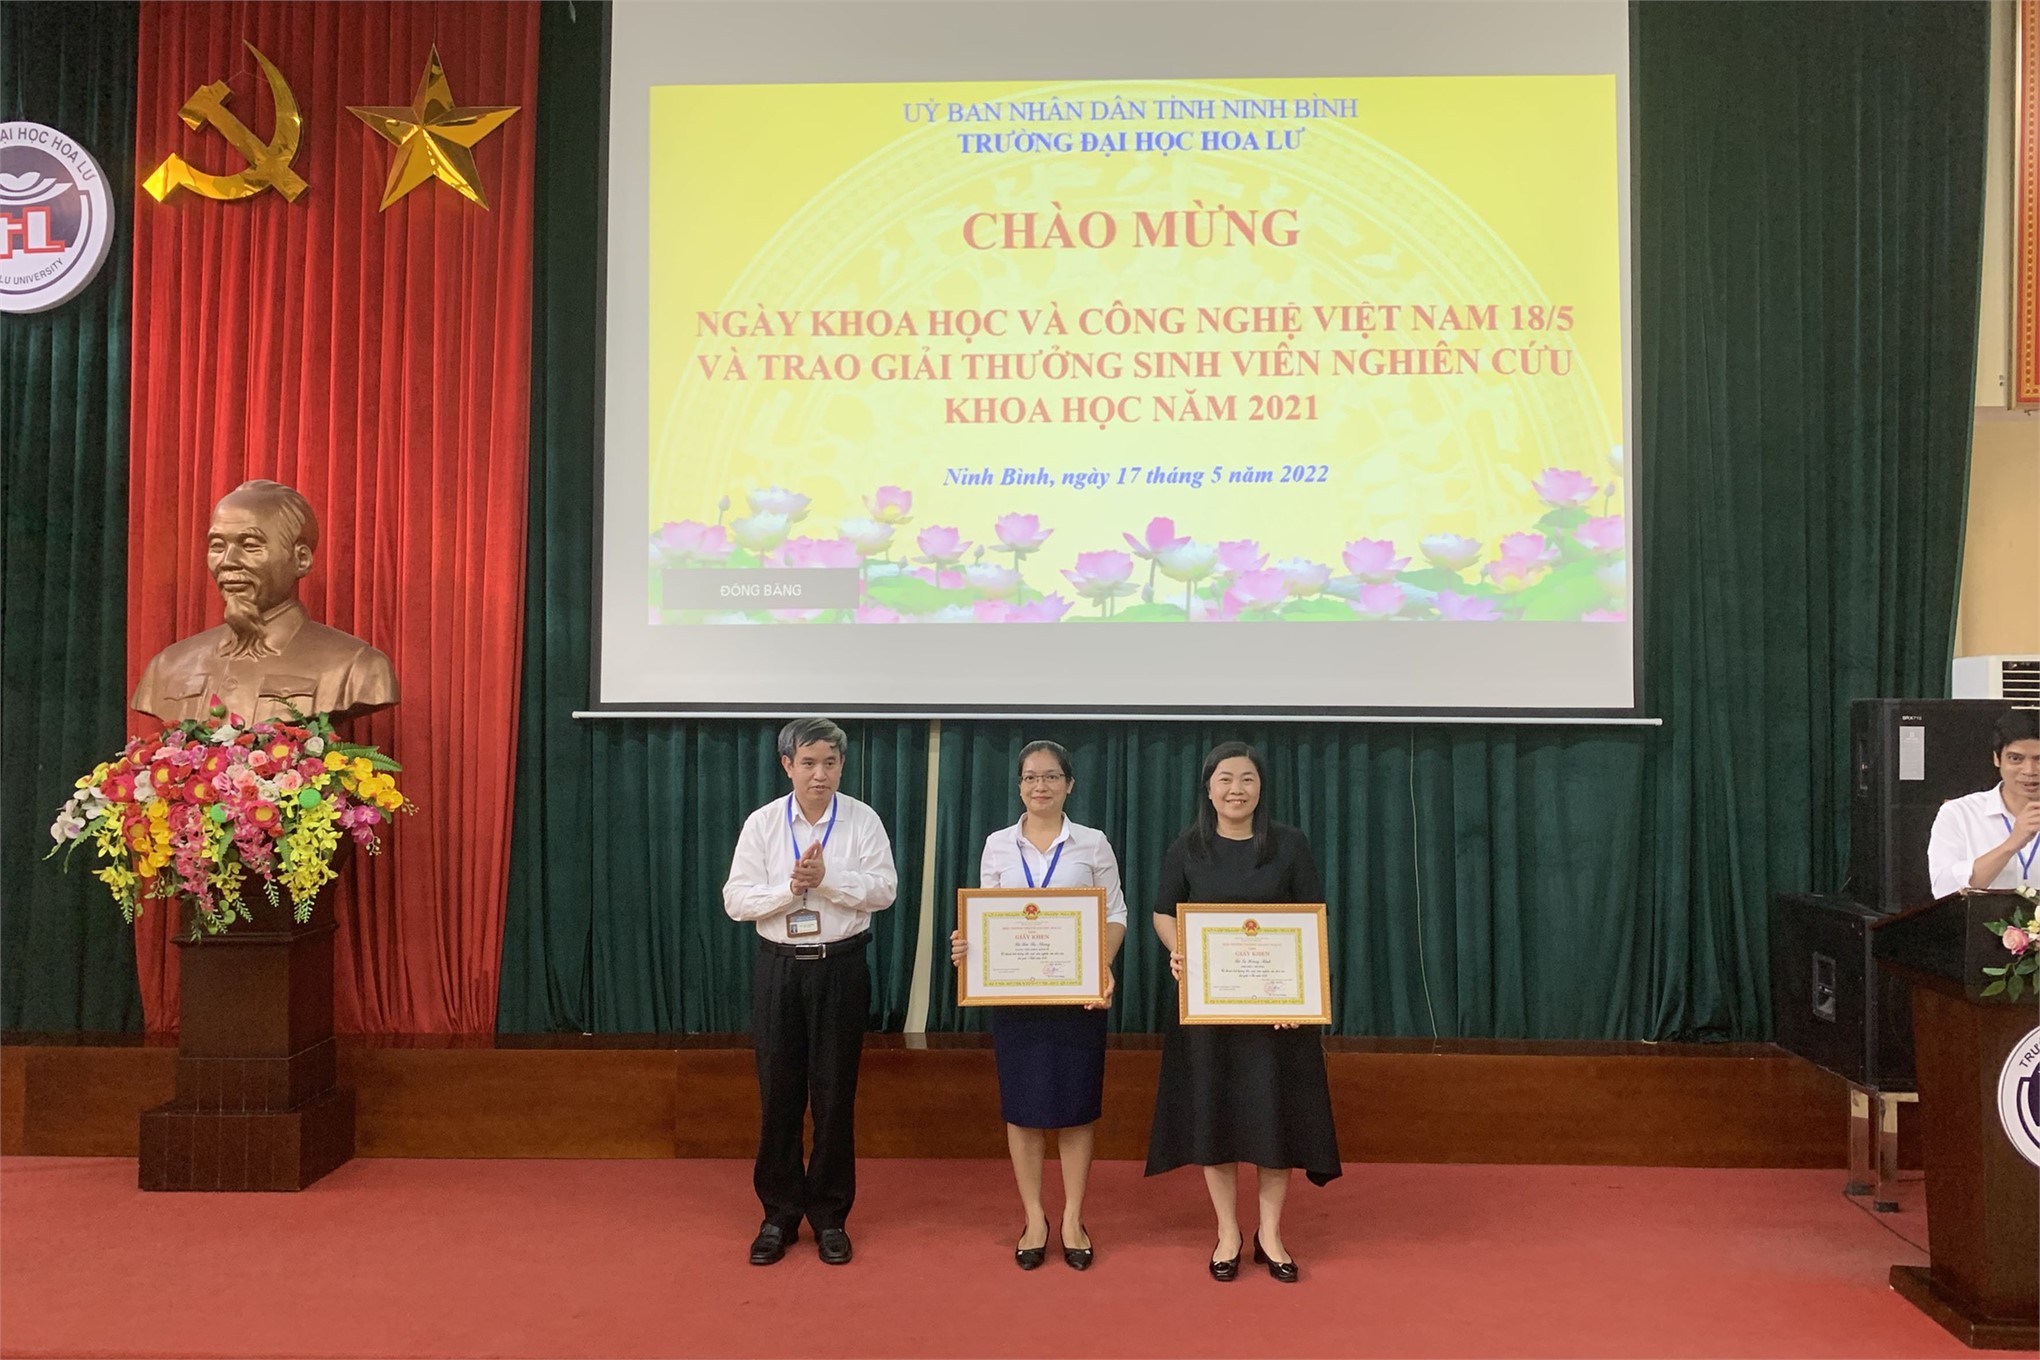 Kỷ niệm ngày Khoa học và Công nghệ Việt Nam 18/5 và trao giải thưởng sinh viên nghiên cứu khoa học năm 2021